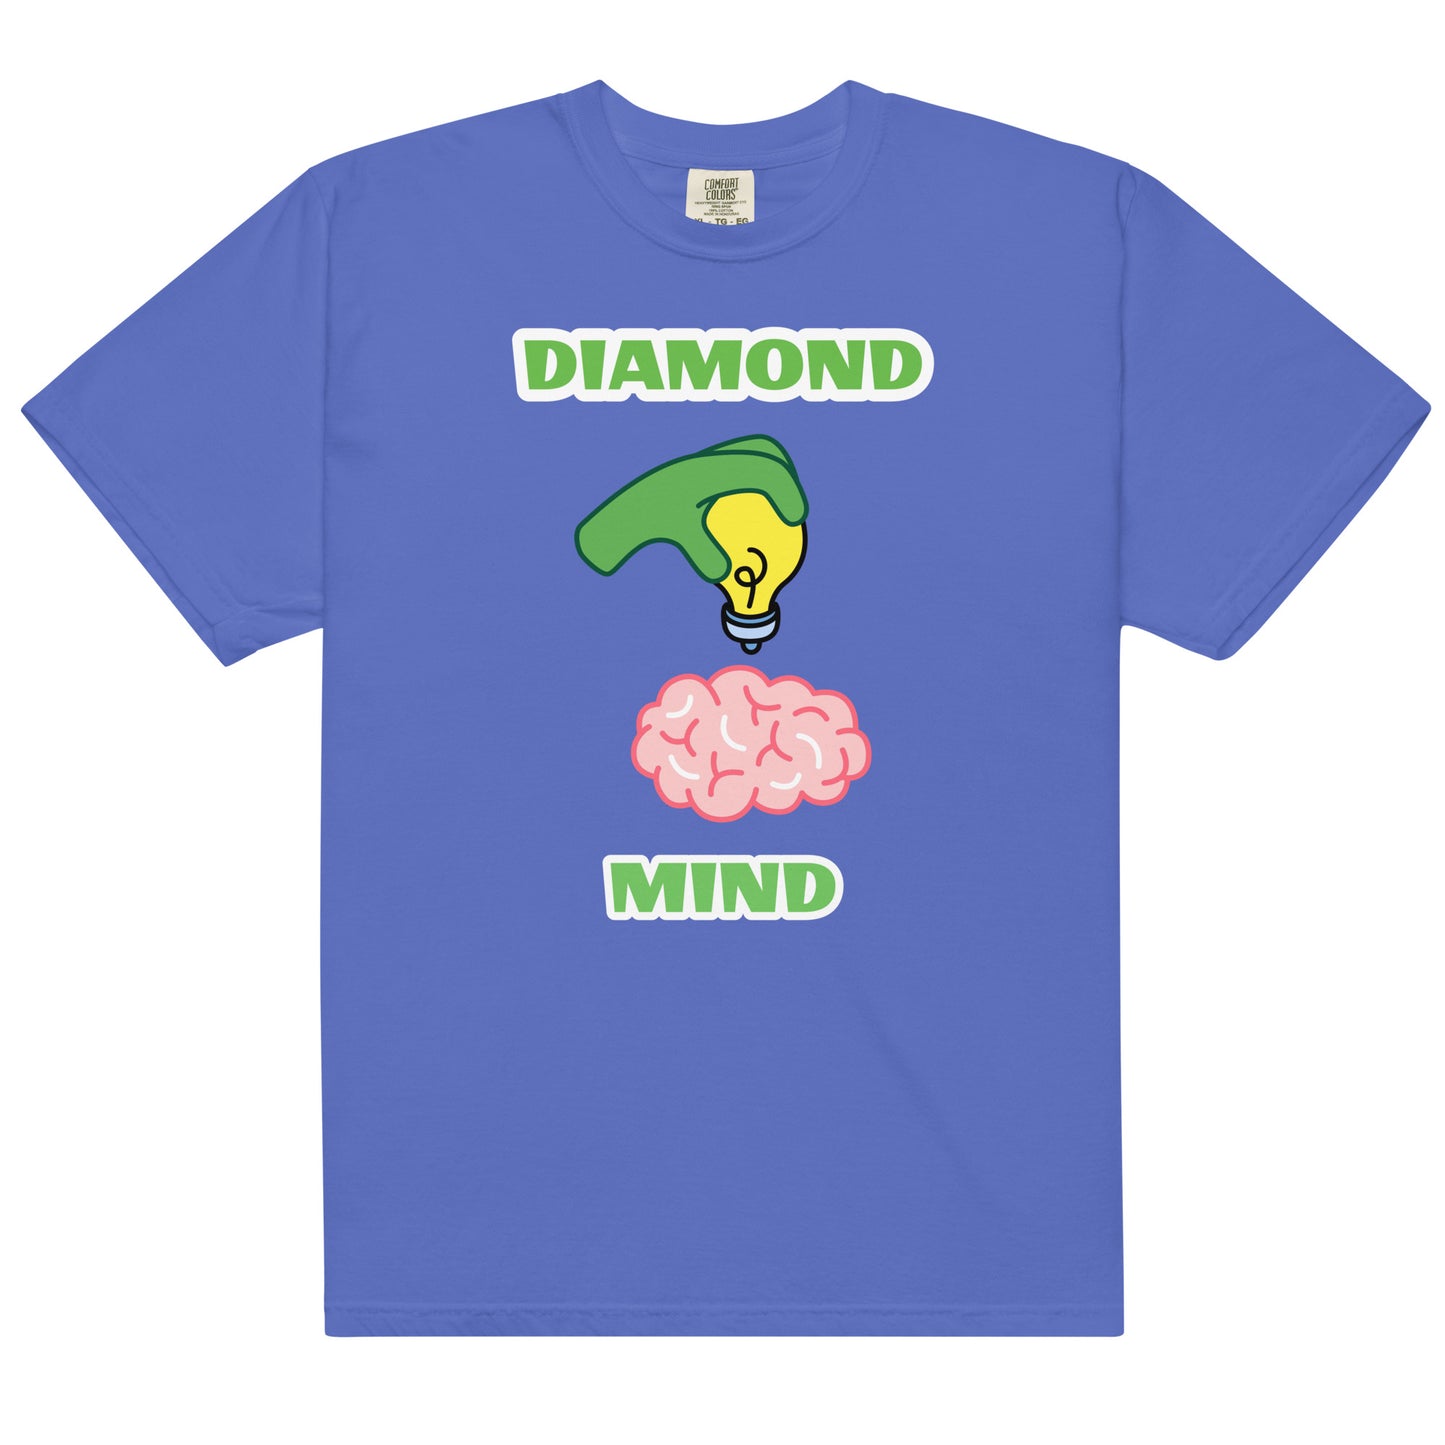 Diamond Mind "Bright Idea" T-Shirt